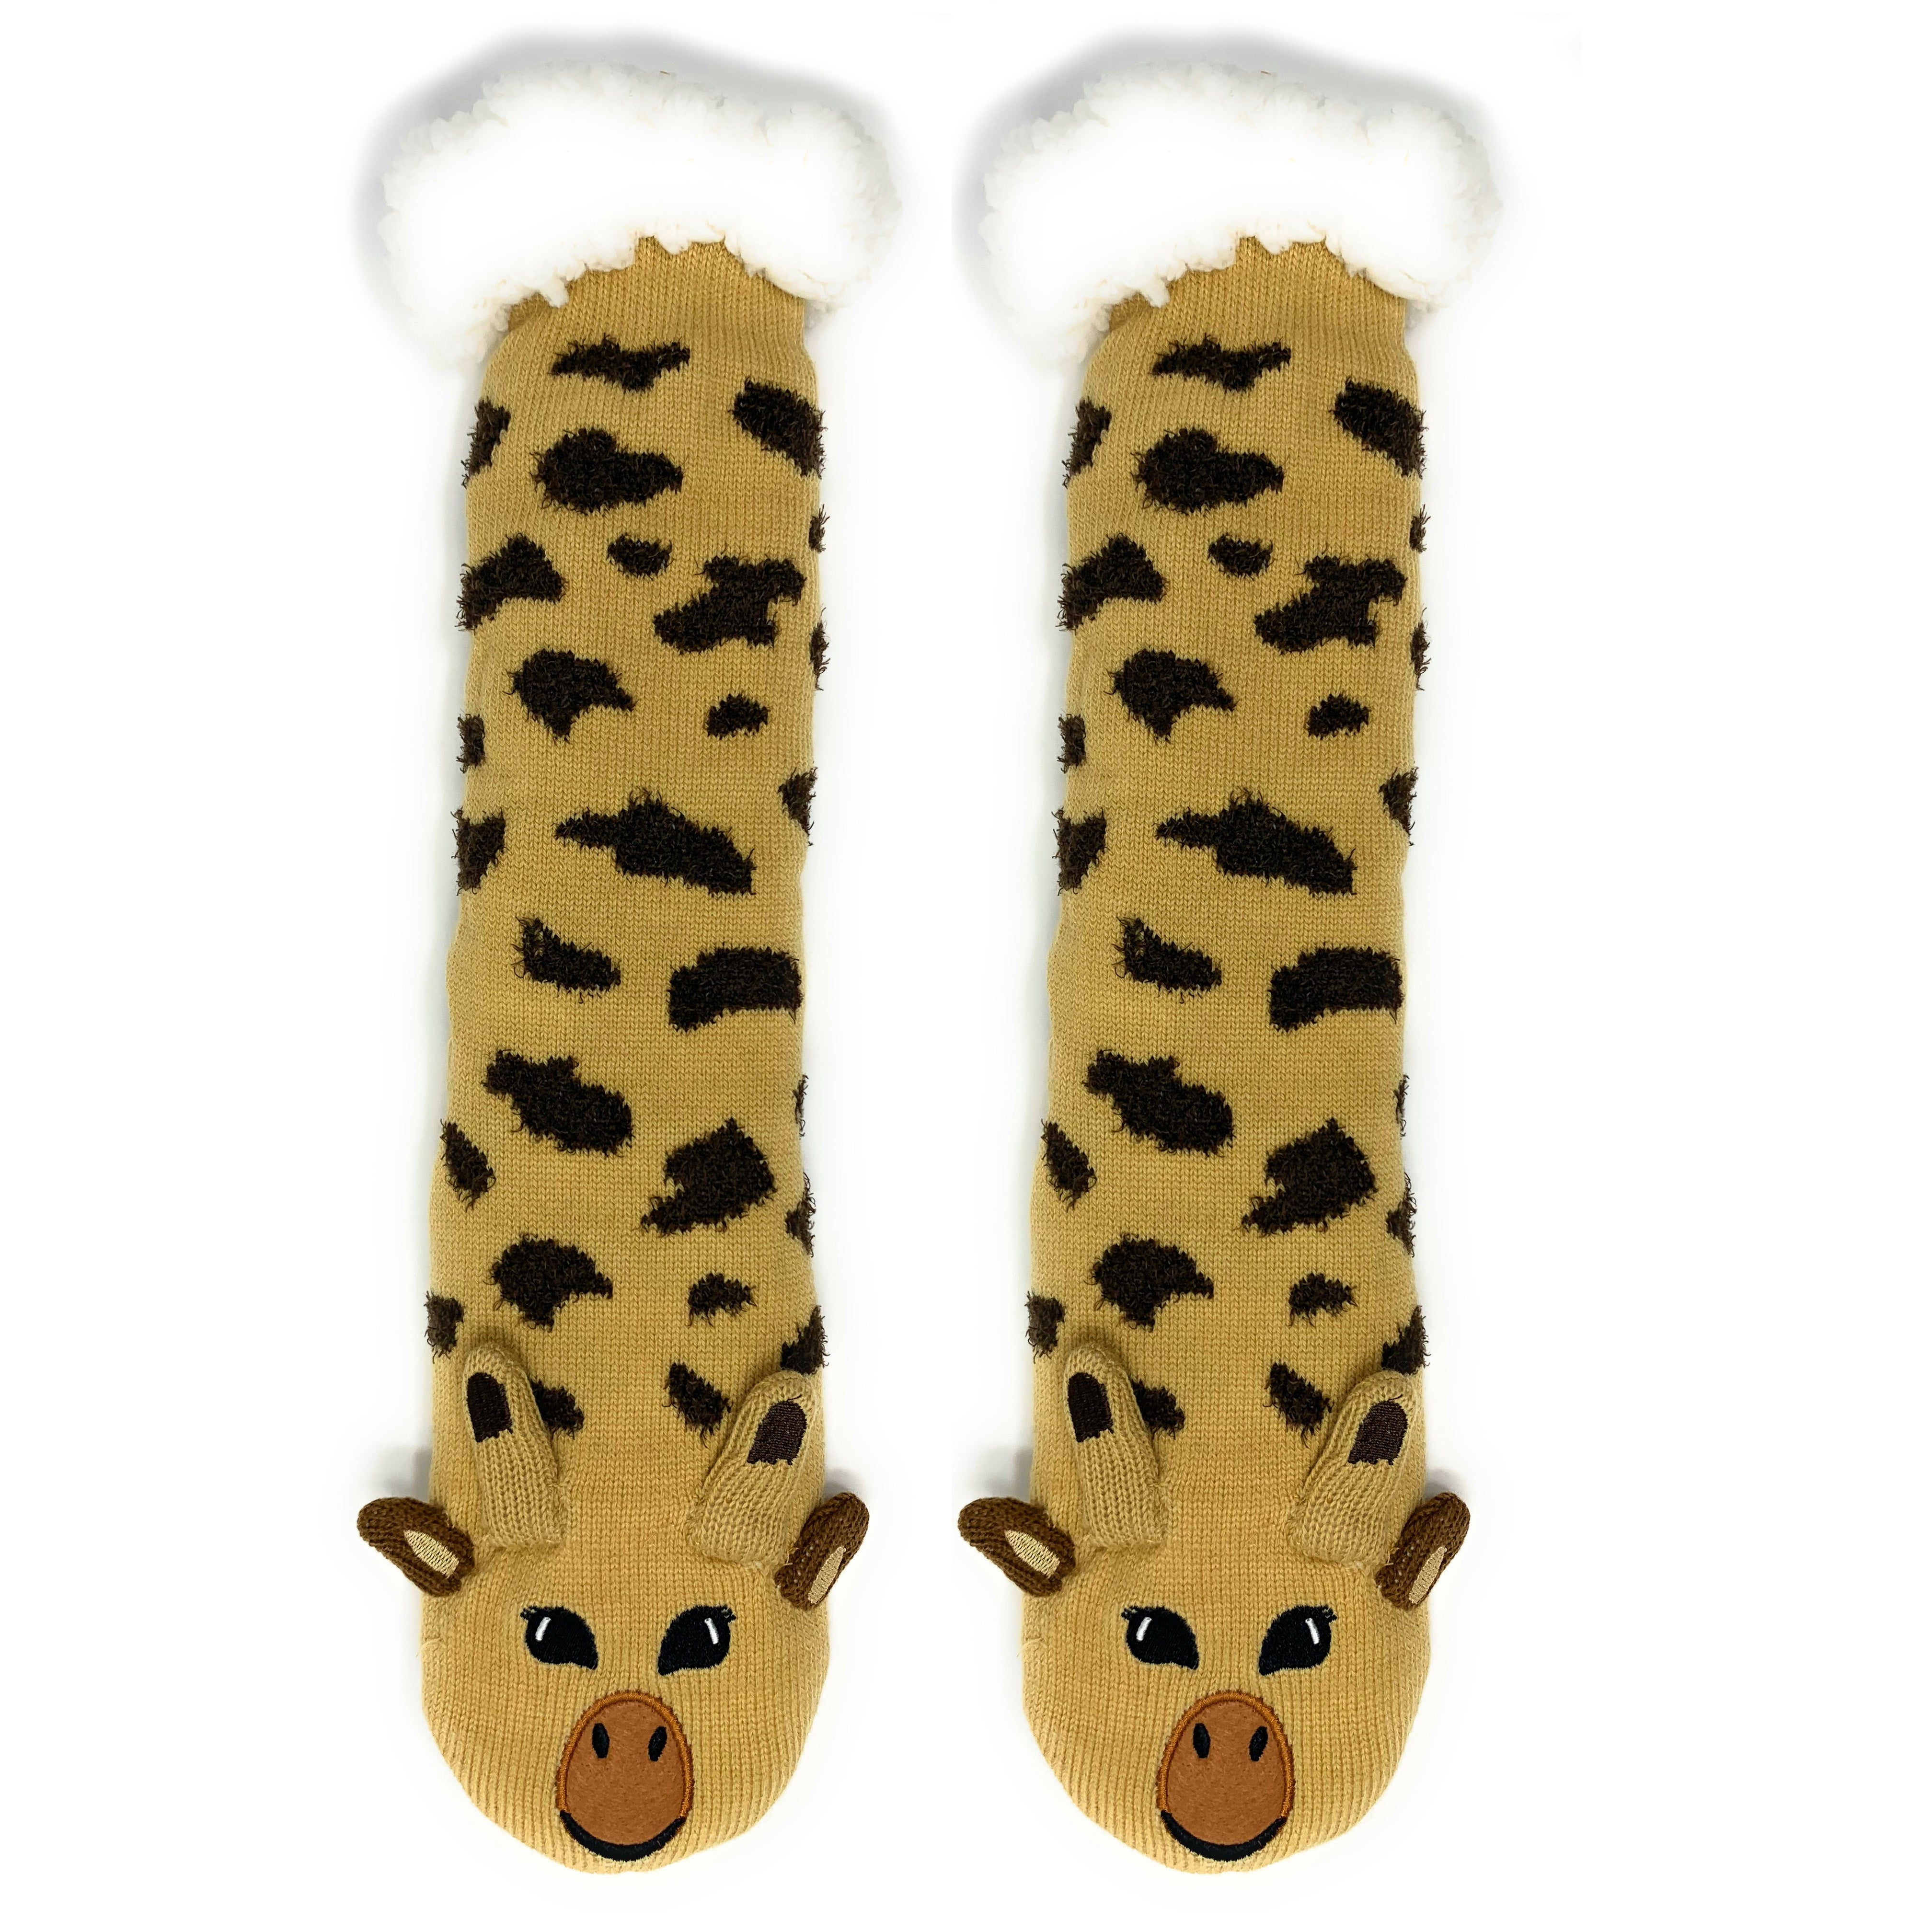 Gee Raff 3D Pop Sherpa Slipper Socks for Women